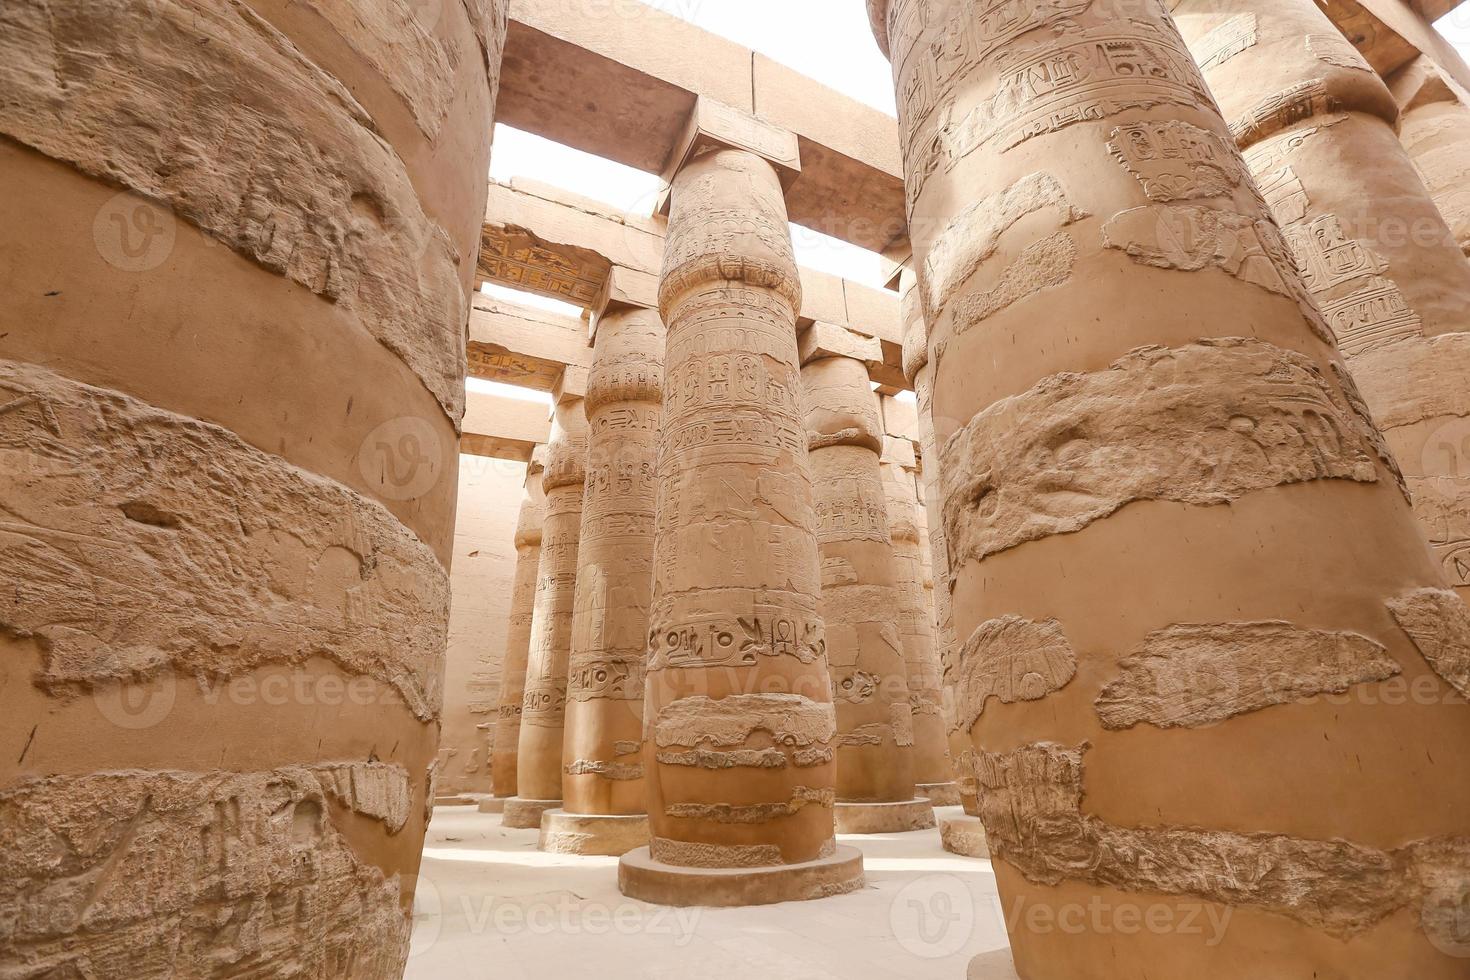 Säulen in der Säulenhalle des Karnak-Tempels, Luxor, Ägypten foto